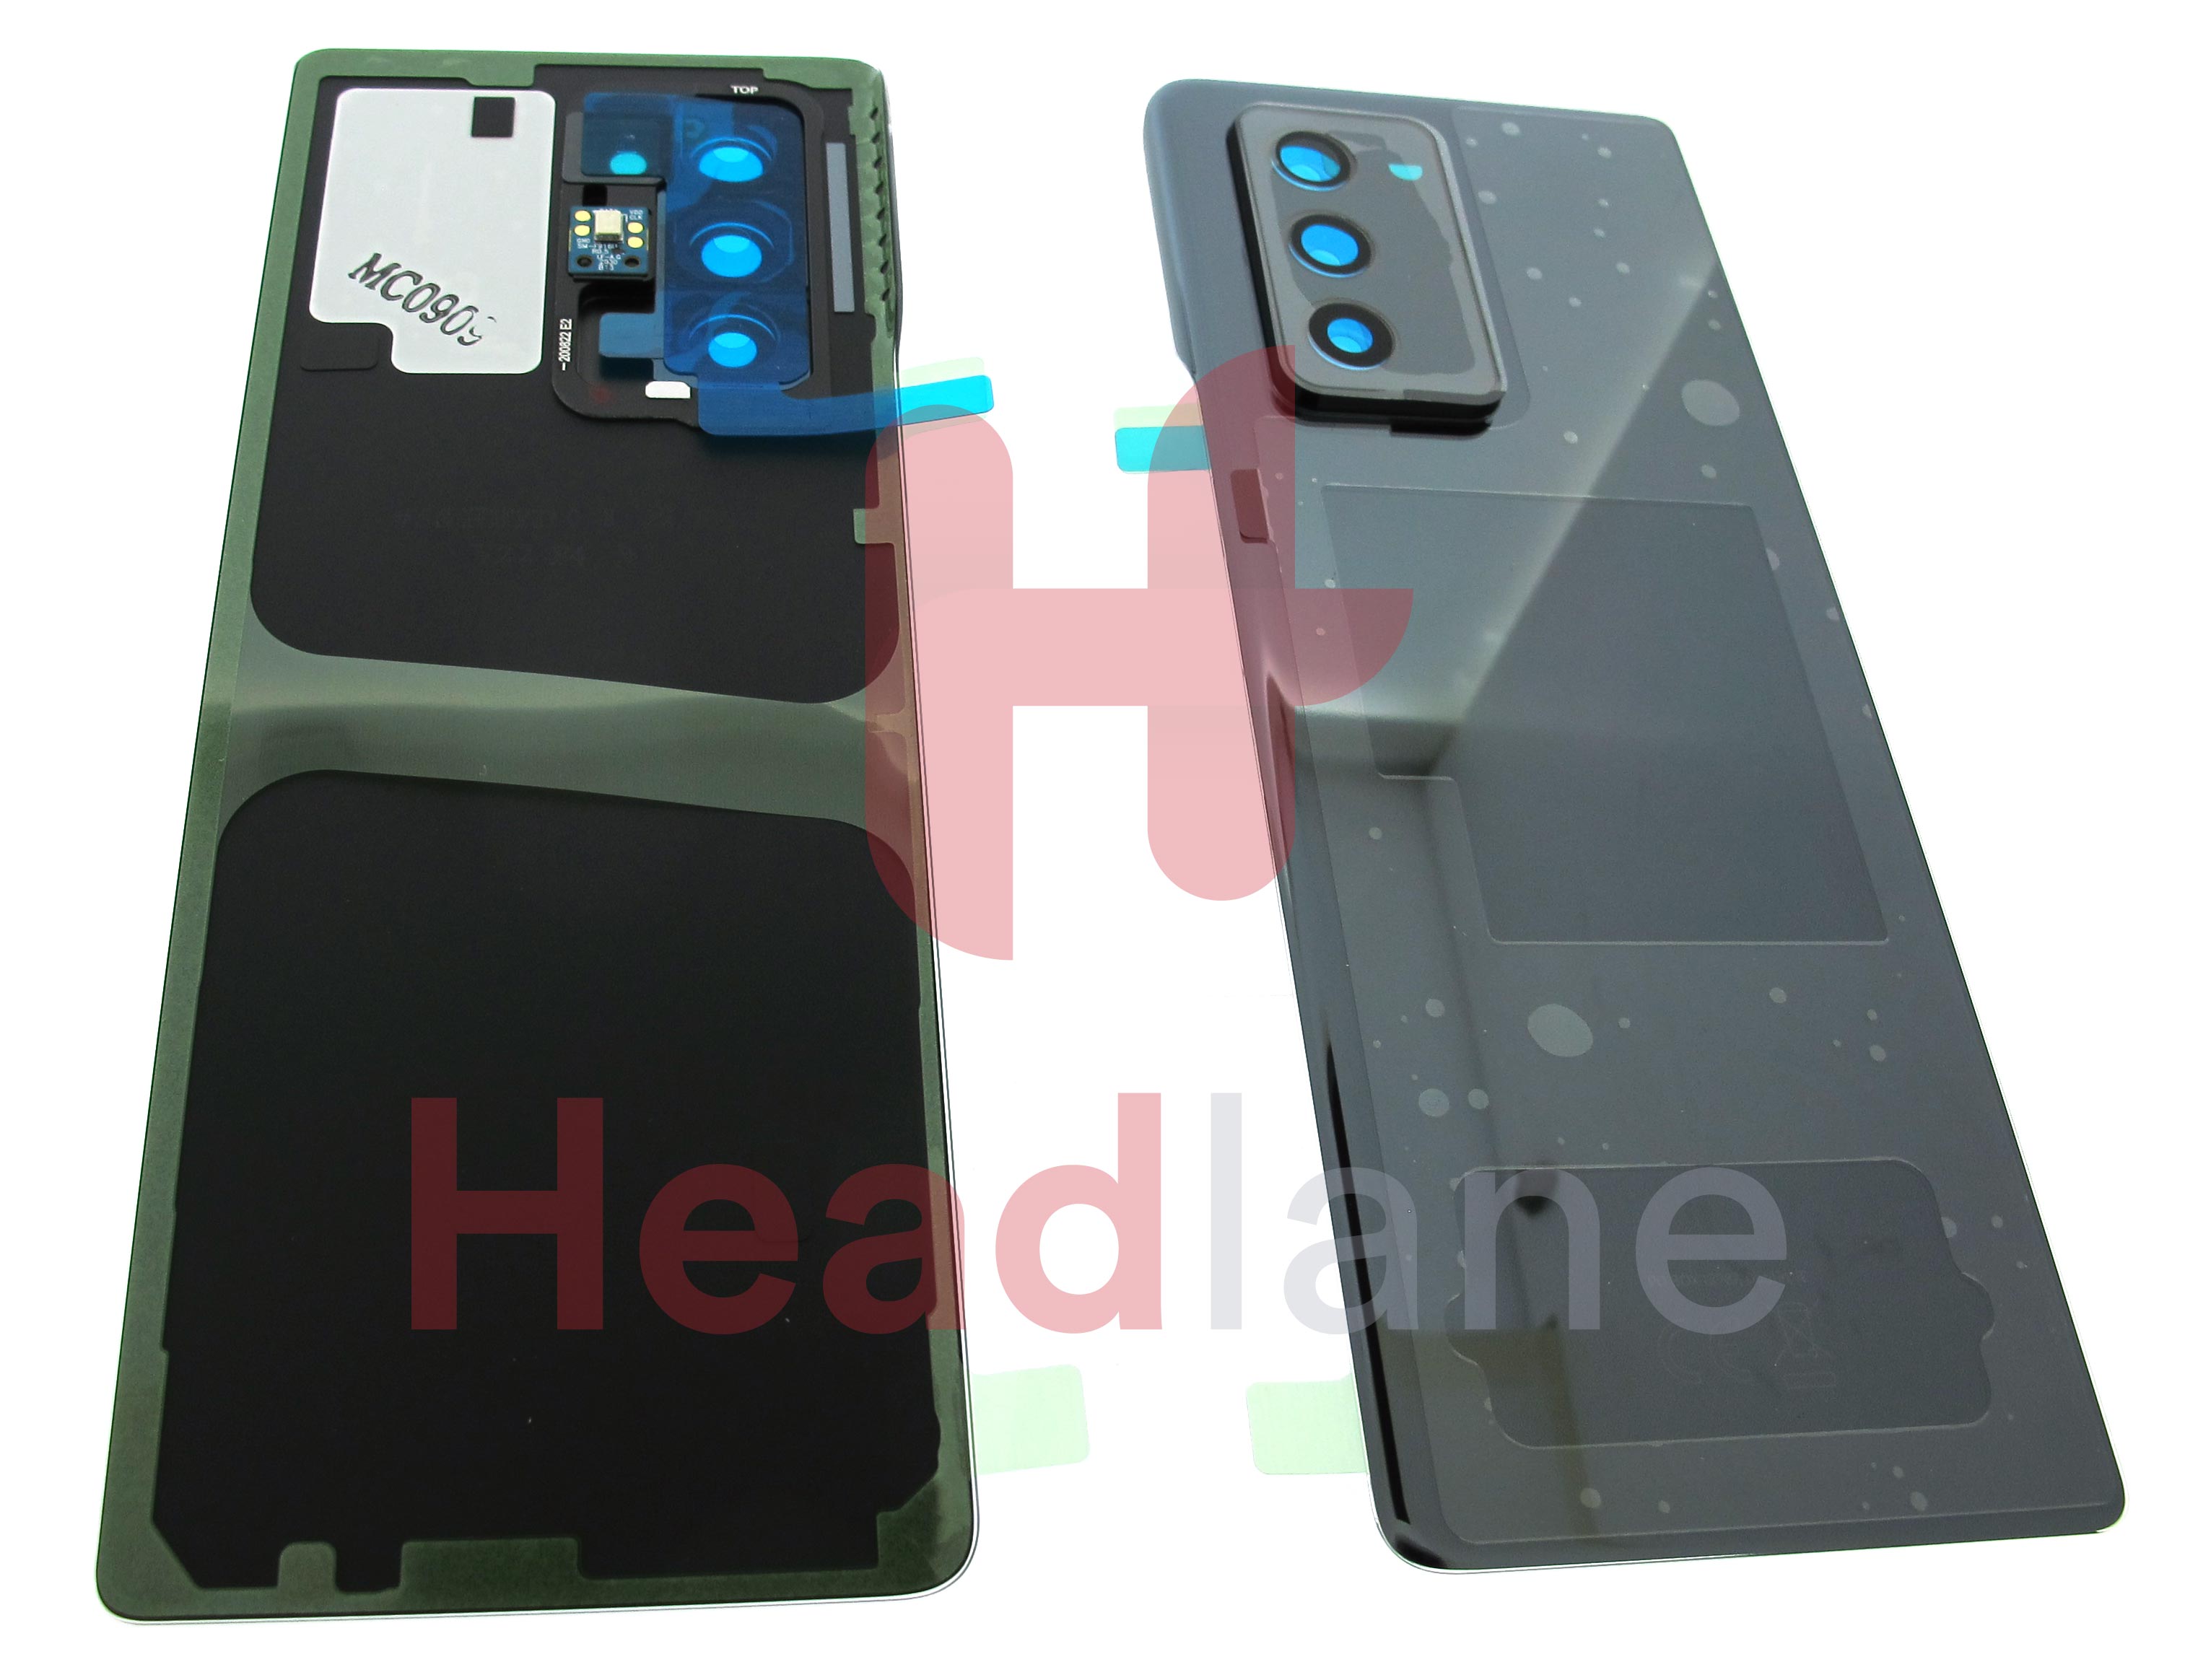 Samsung SM-F916 Galazy Z Fold2 5G Back / Battery Cover - Mystic Black